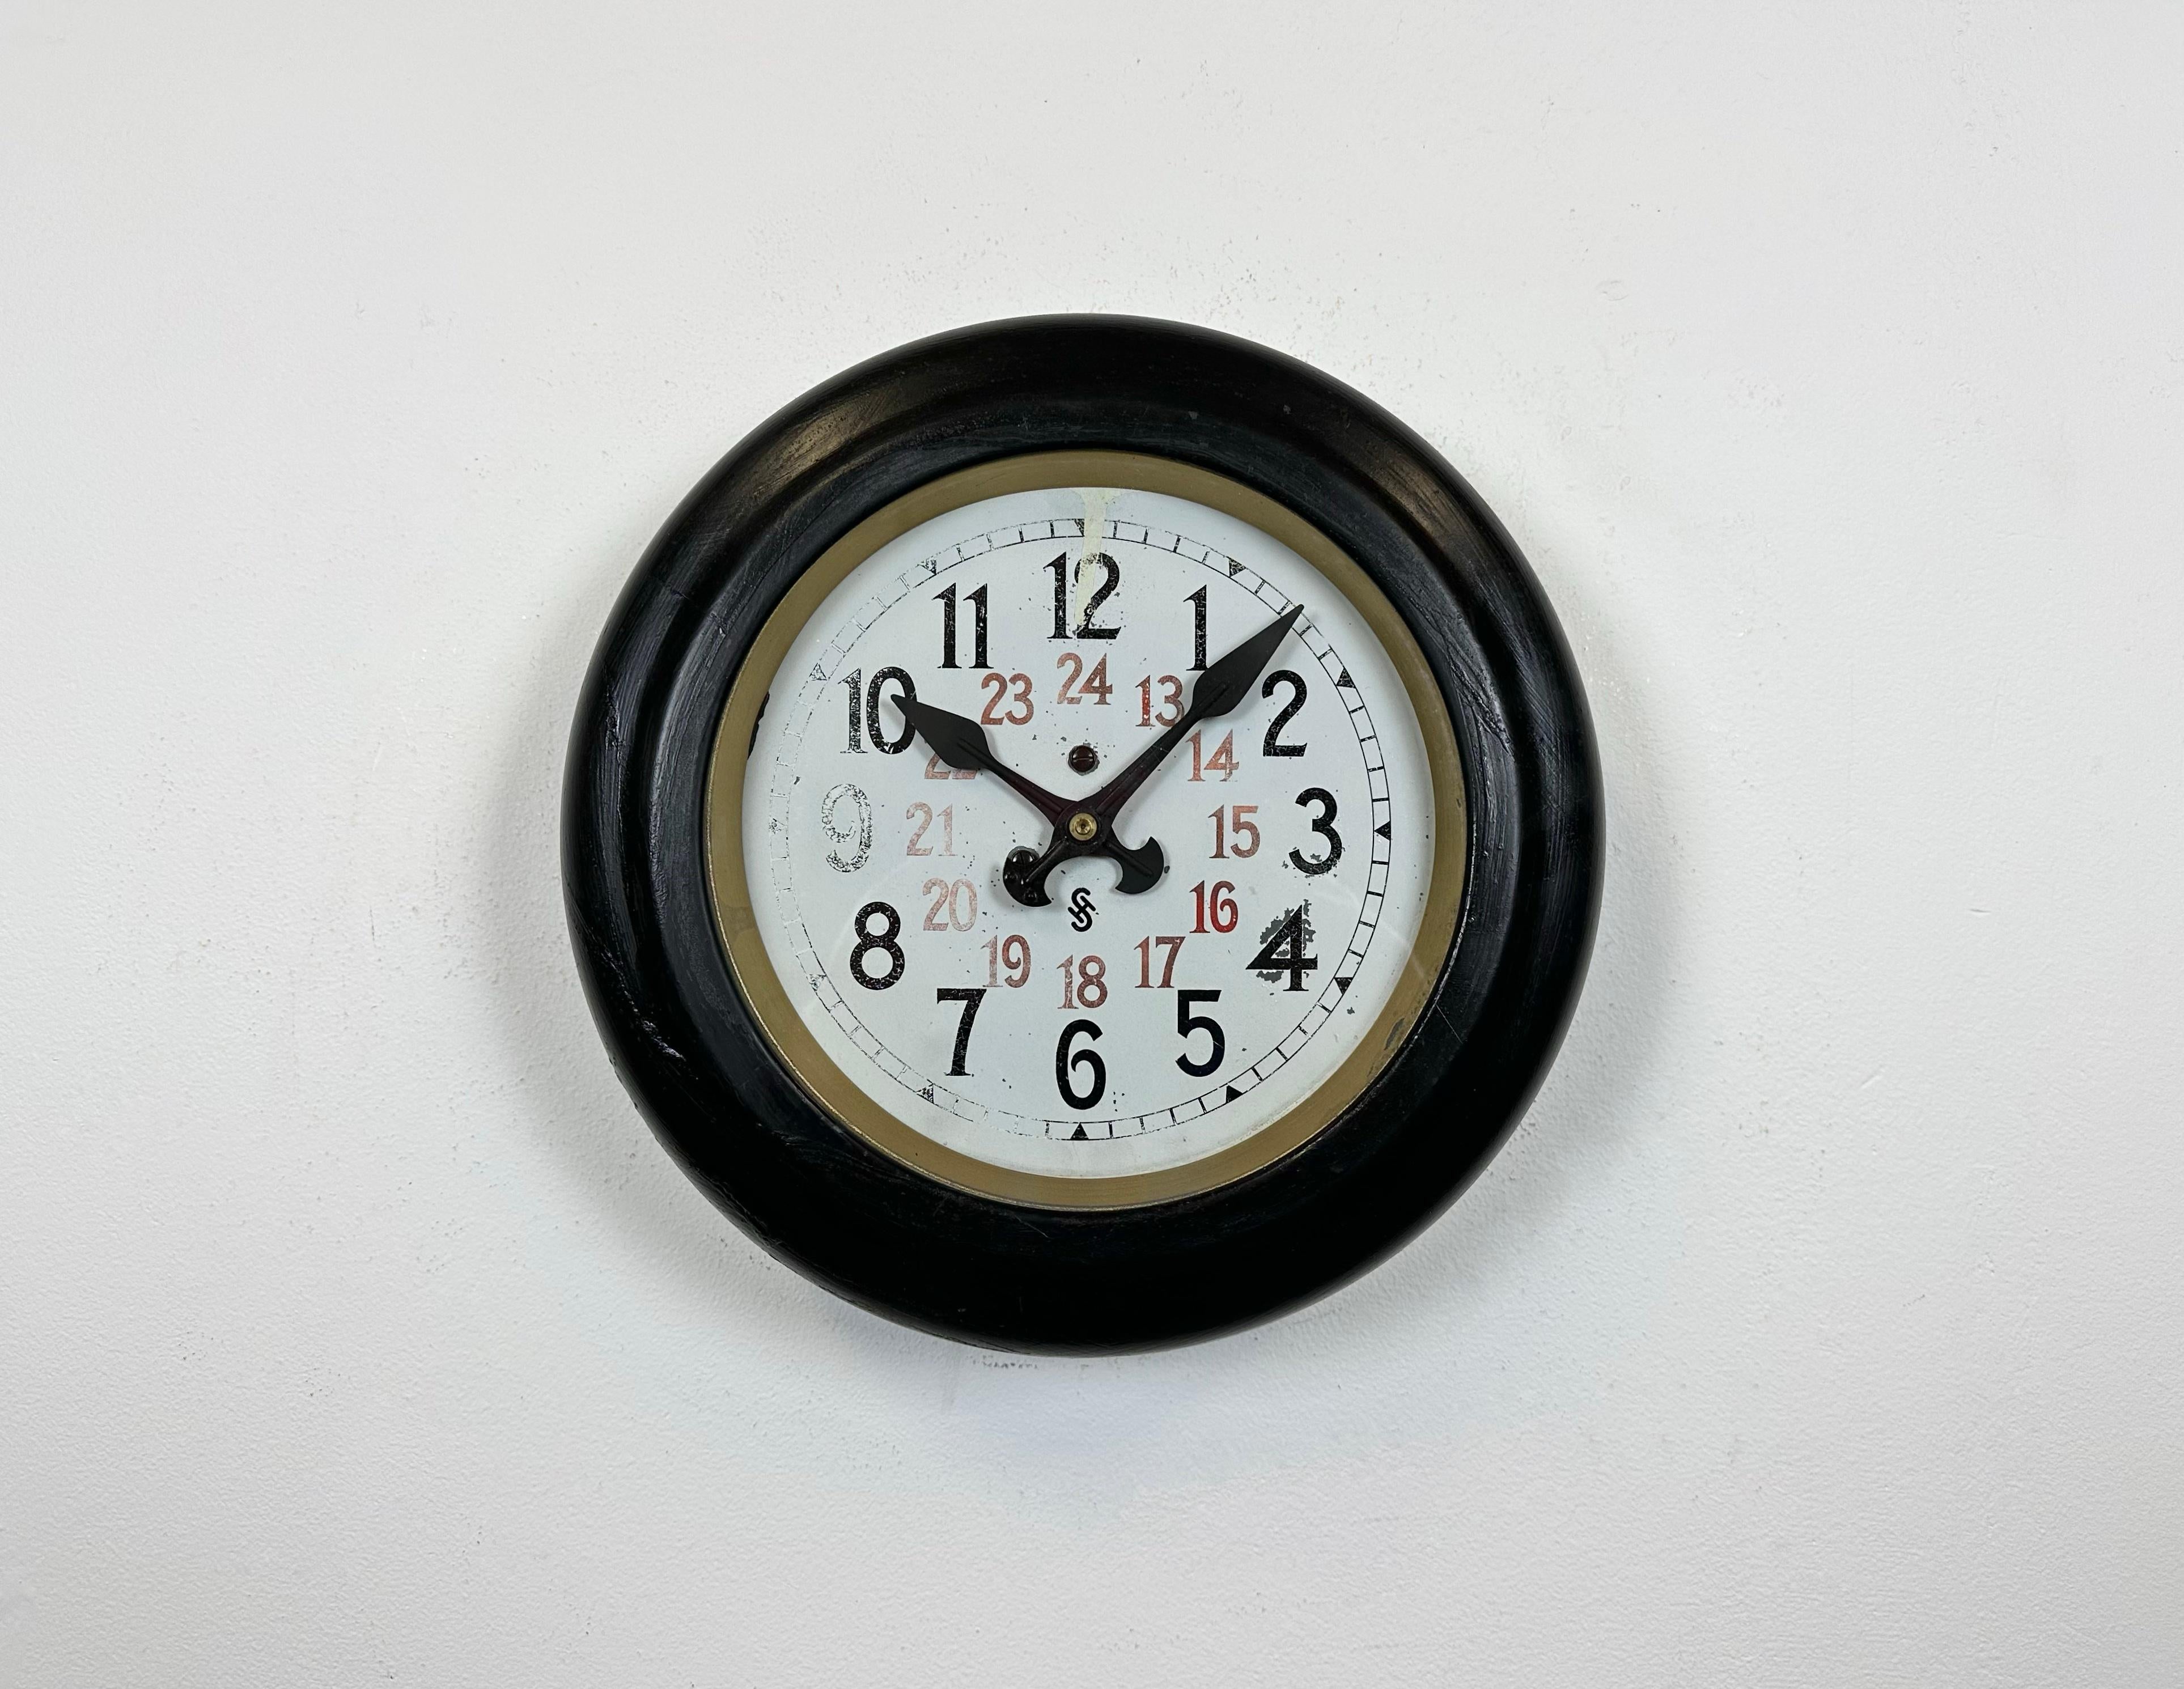 Cette horloge murale a été produite par Siemens en Allemagne dans les années 1930. Il comporte un cadre en métal noir, un cadran en métal et un couvercle en verre transparent. La pièce a été convertie en un mécanisme d'horlogerie fonctionnant sur